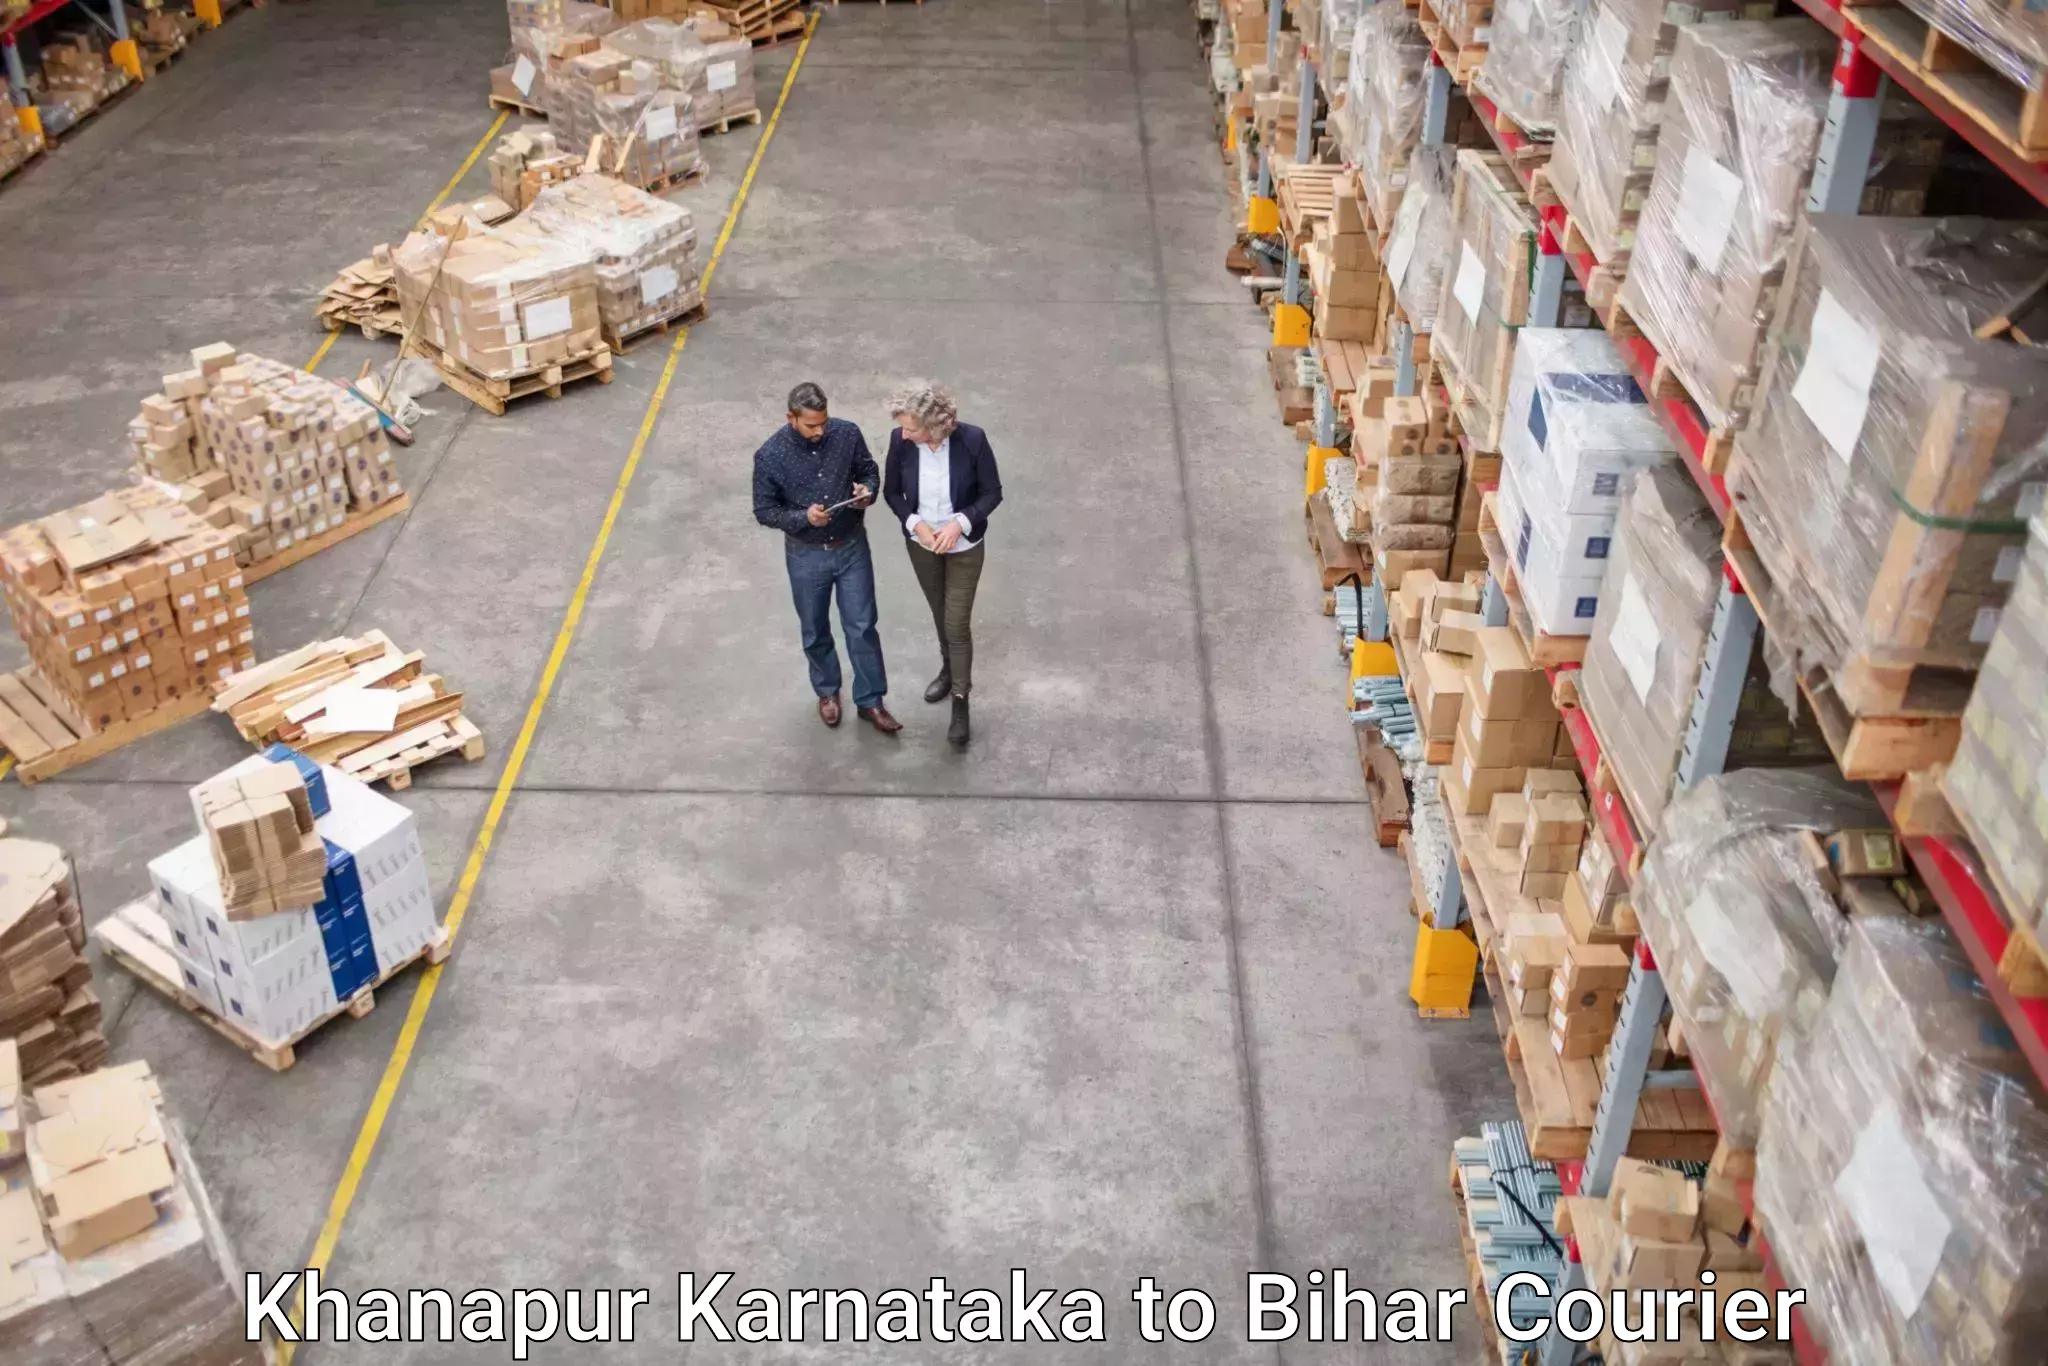 Express shipping Khanapur Karnataka to Raghunathpur Buxar